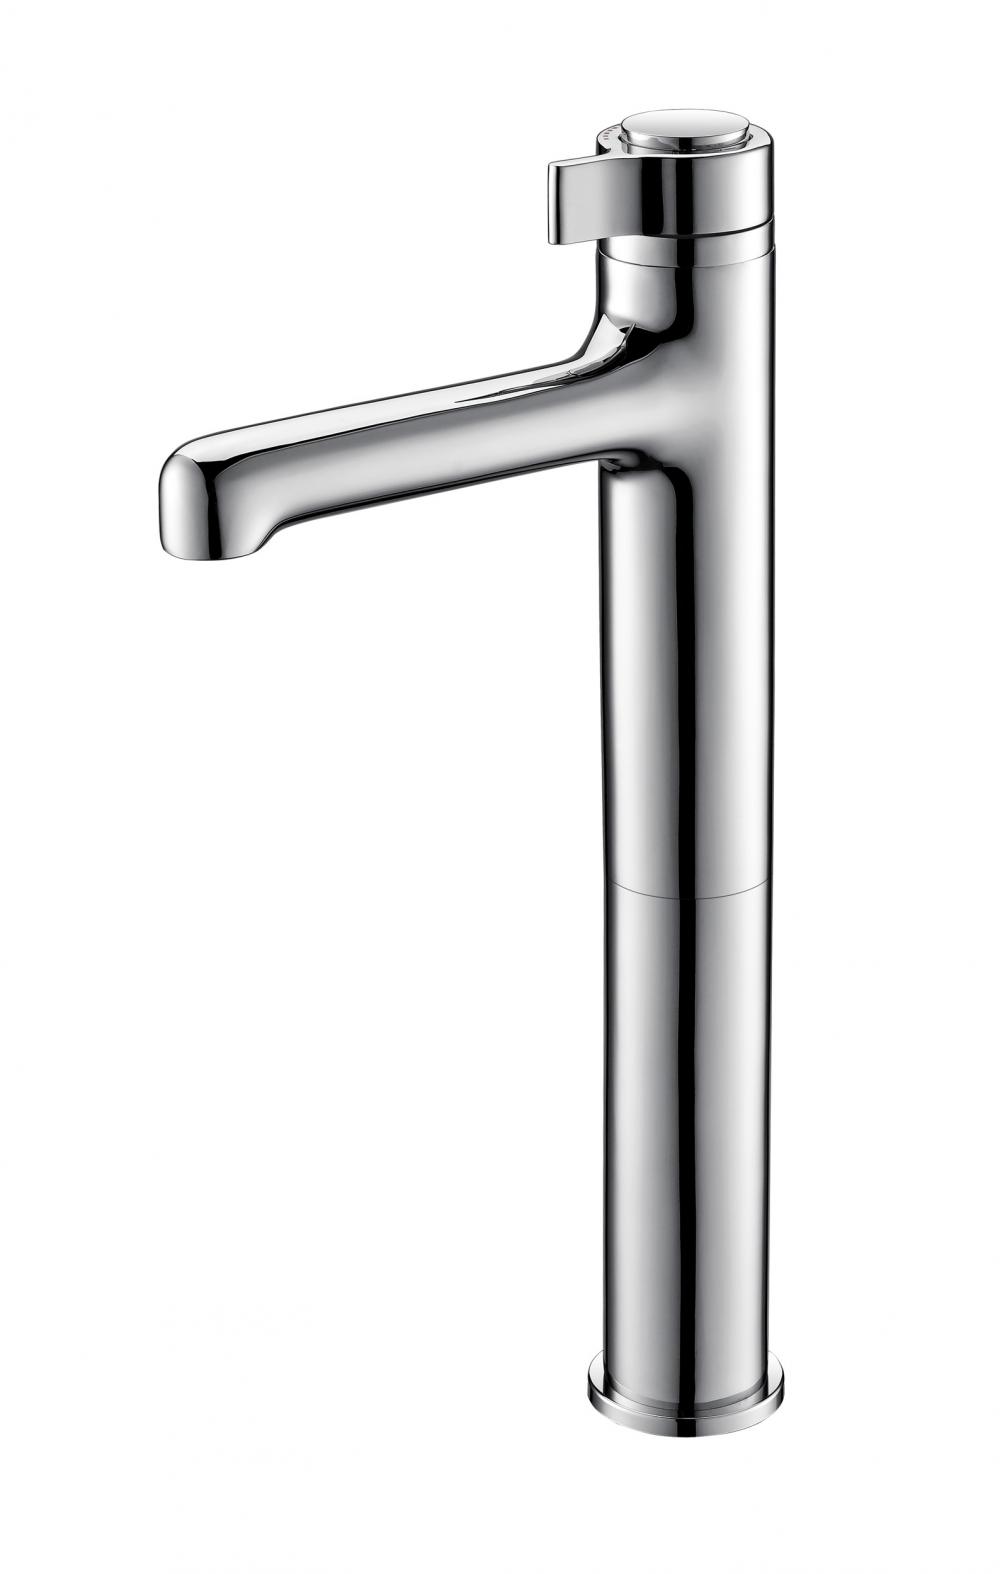 Sink Tall body Faucet Modern Basin Mixer Tap